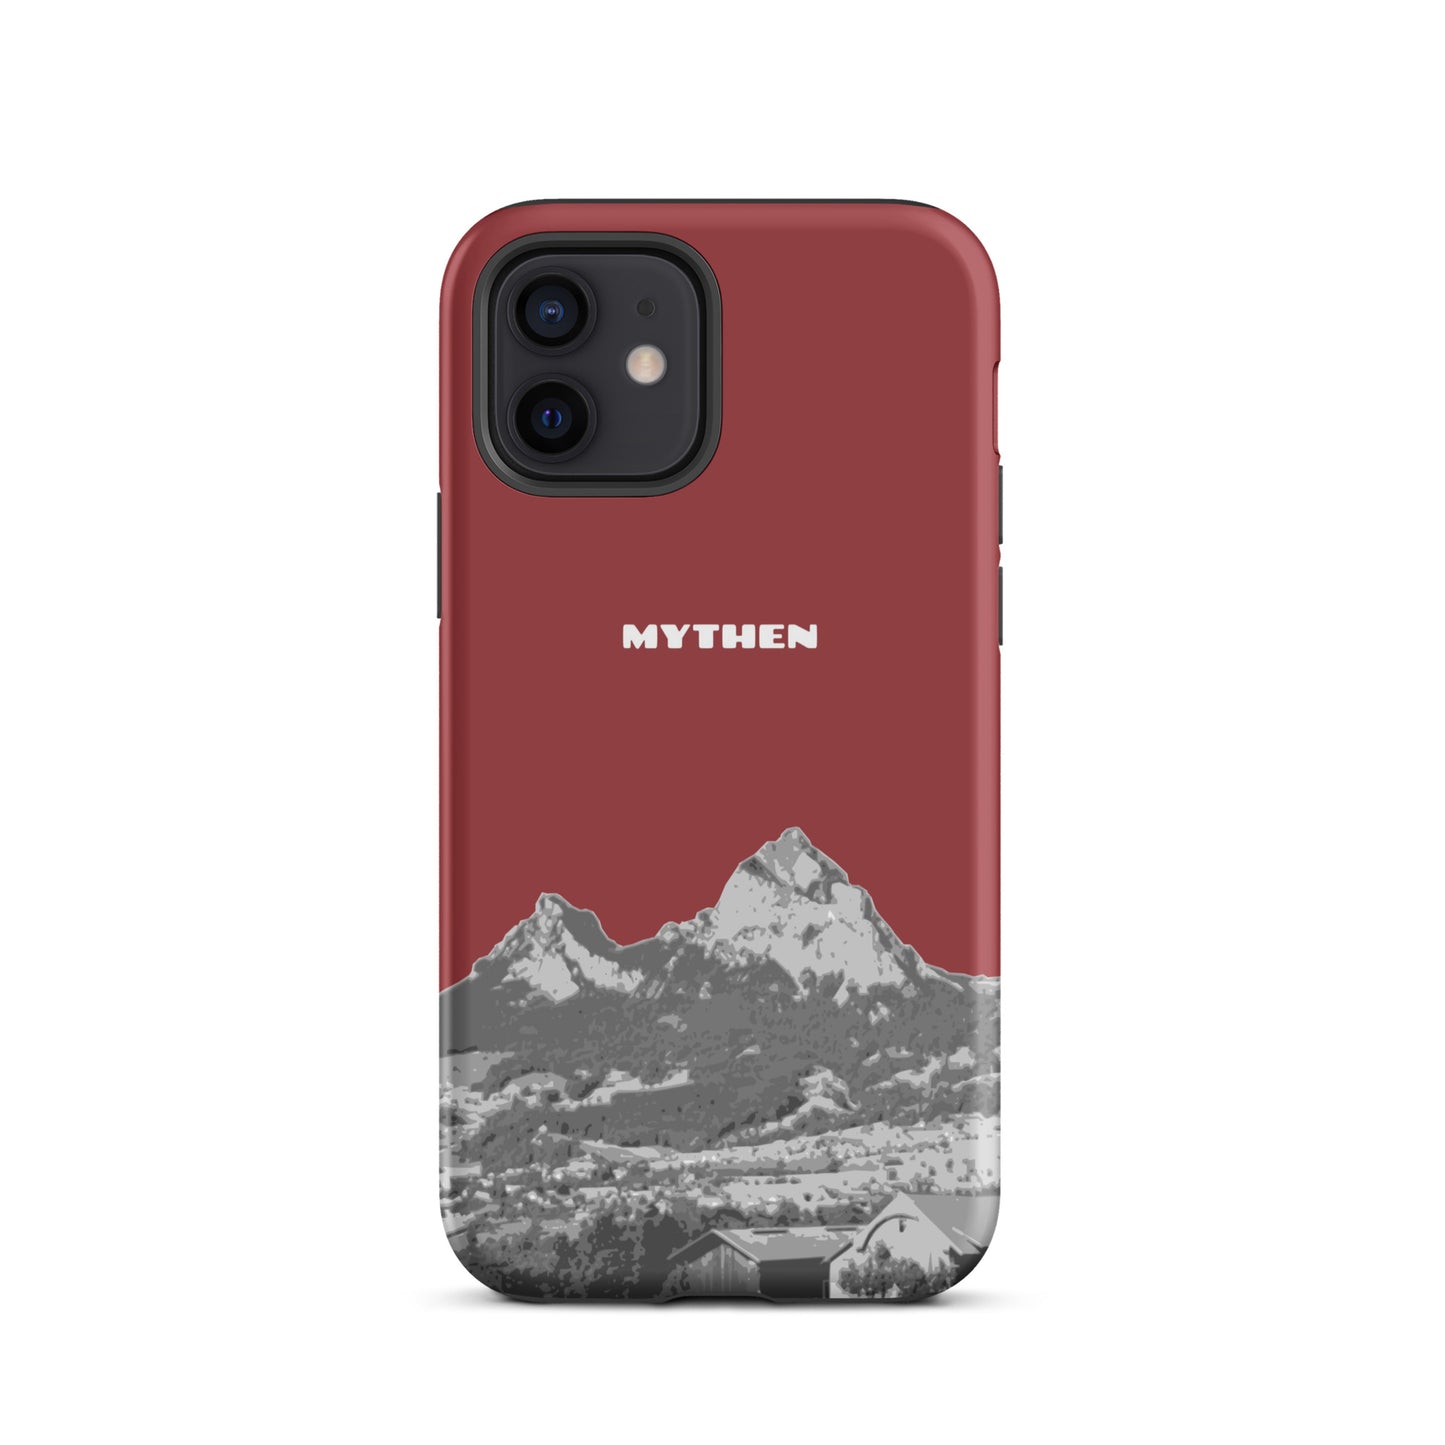 Hülle für das iPhone 12 von Apple in der Farbe Rot, die den Grossen Mythen und den Kleinen Mythen bei Schwyz zeigt. 